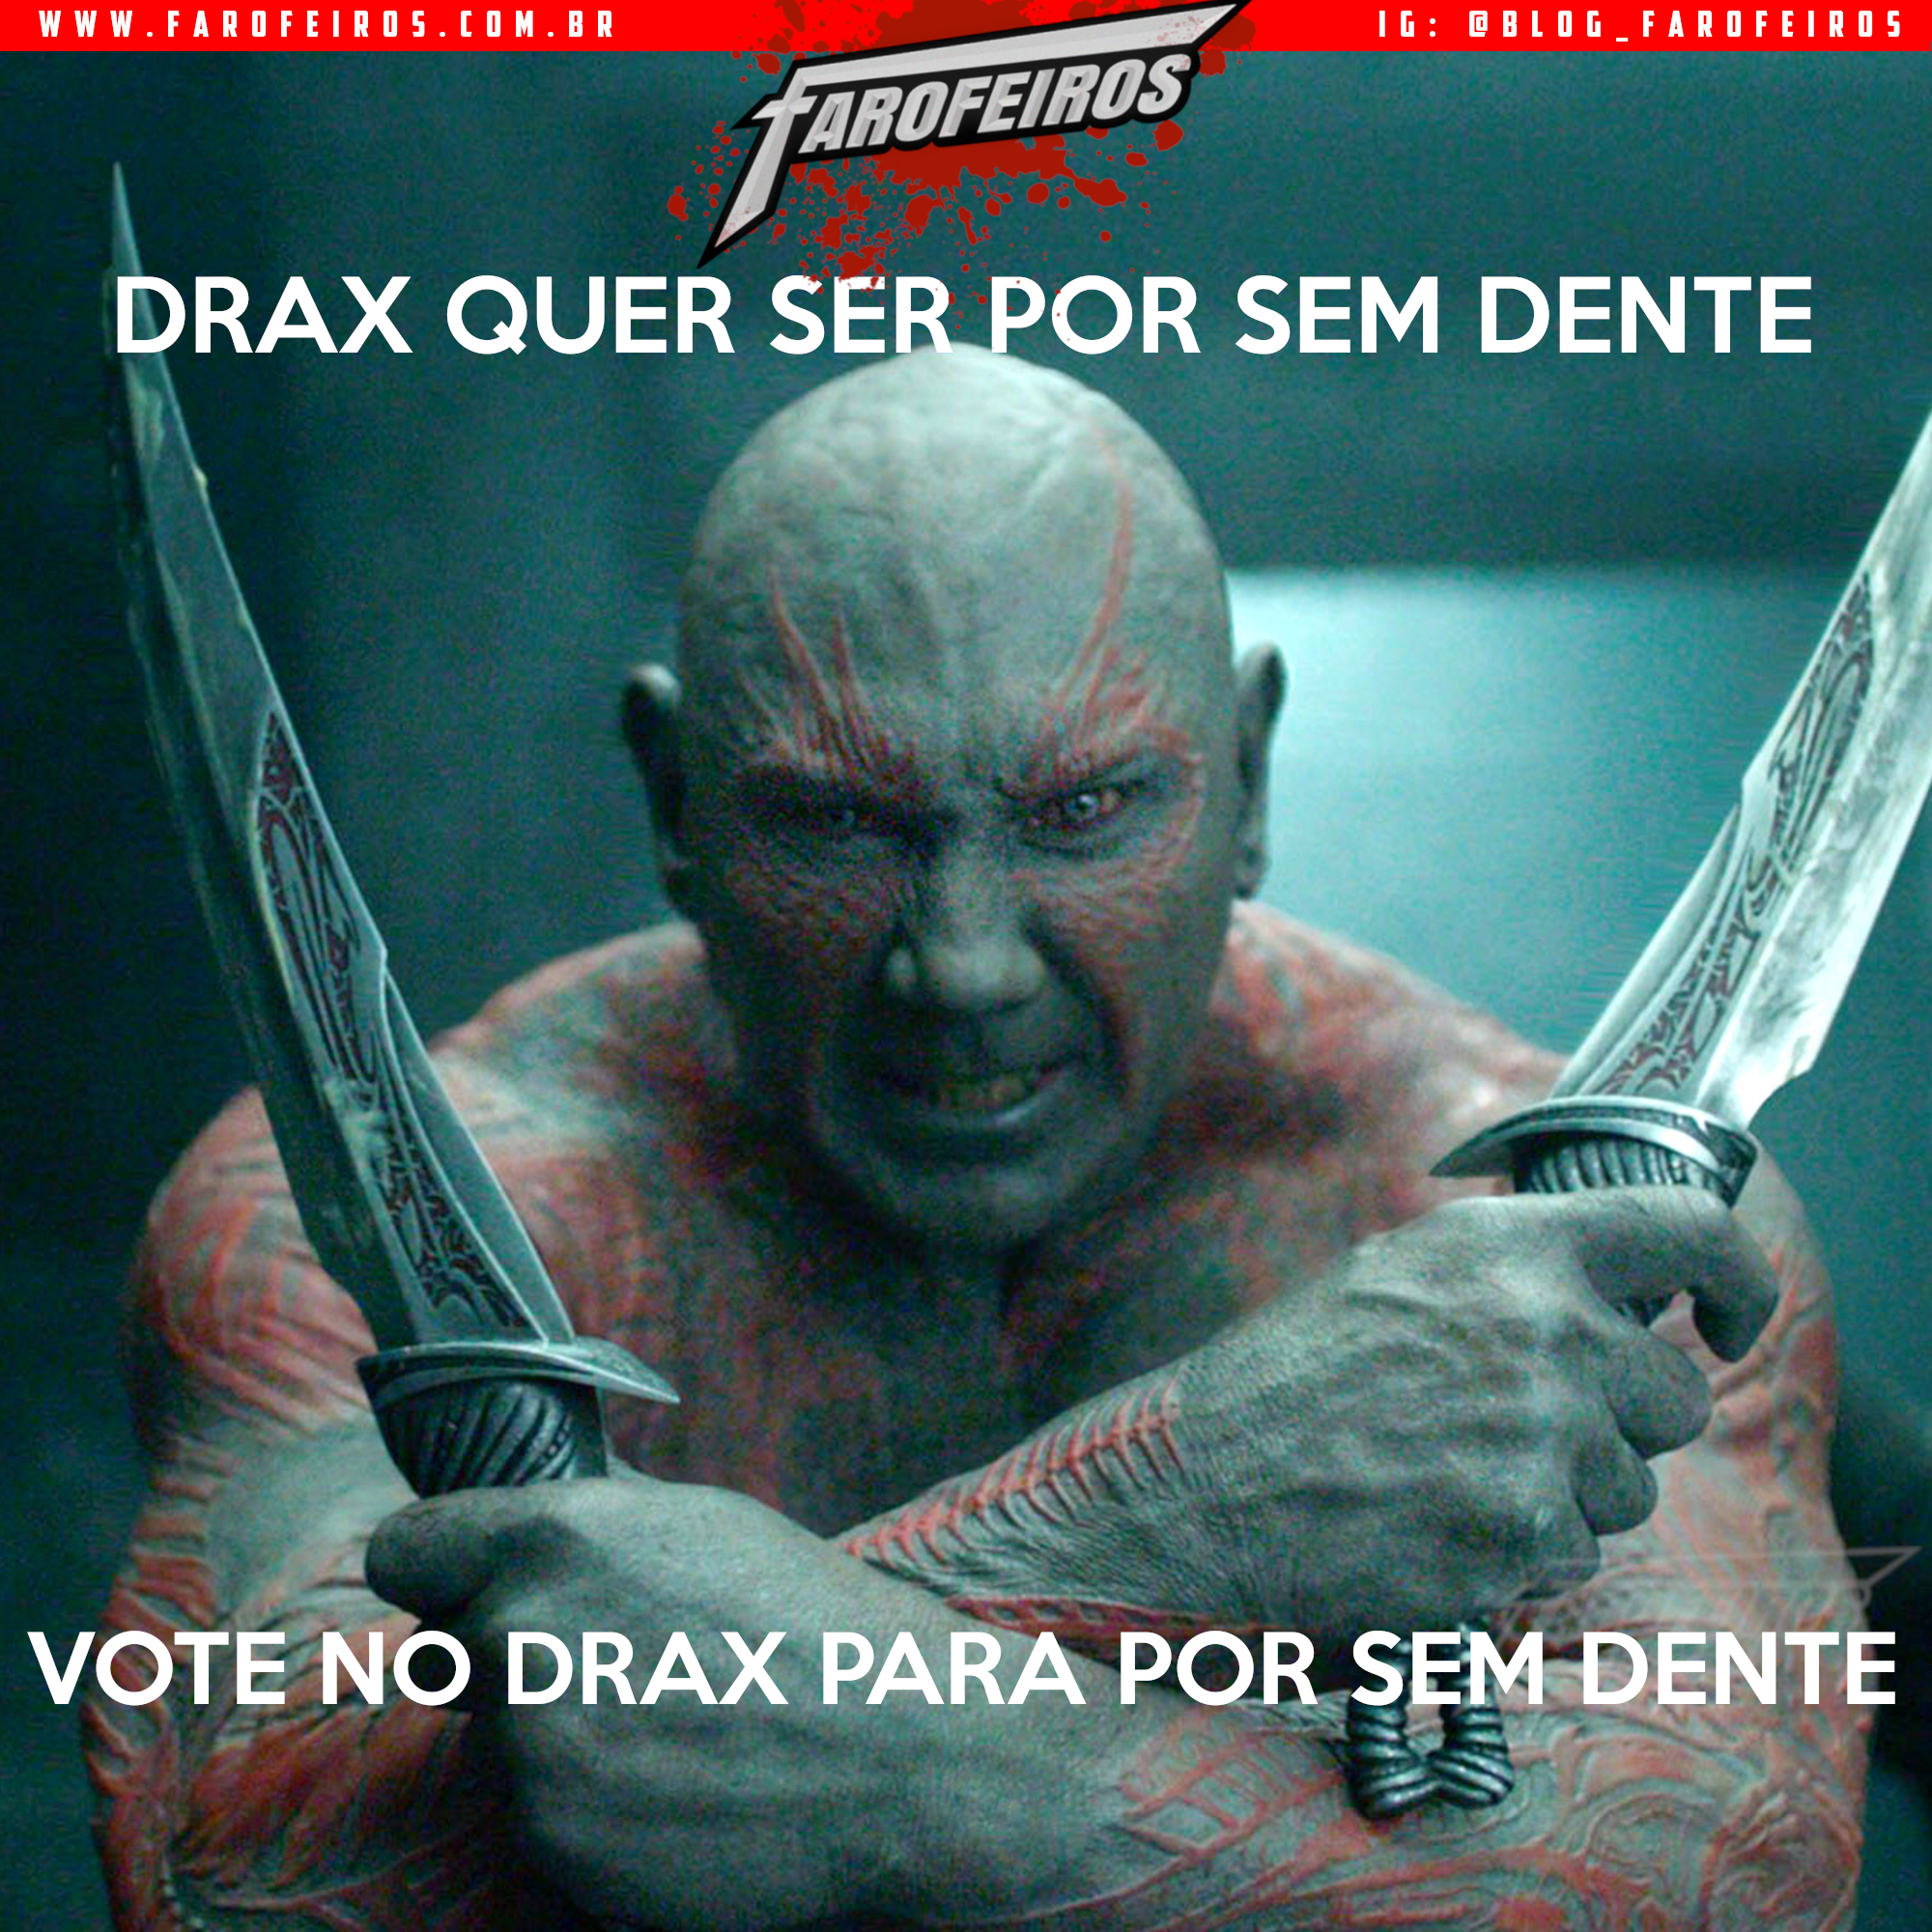 Super Eleições 2018 - Farofeiros com br - Drax - 1